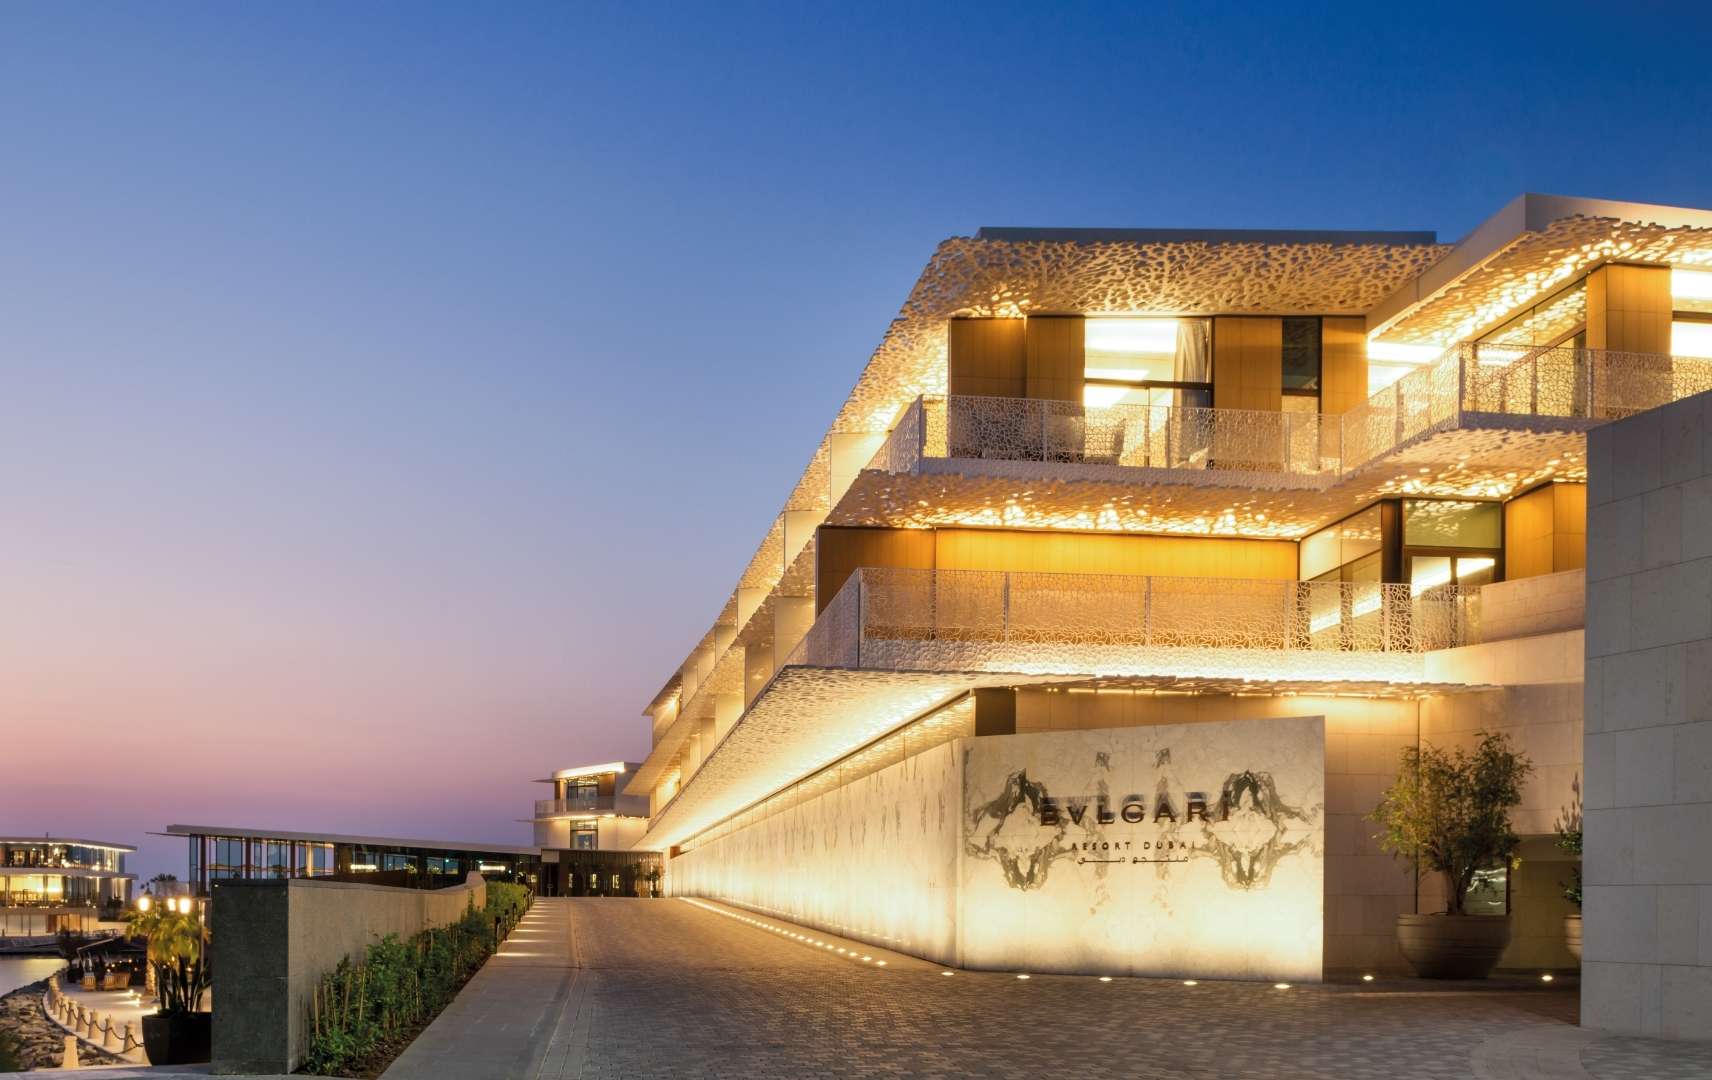 Außenansicht des BVLGARI Resorts in Dubai